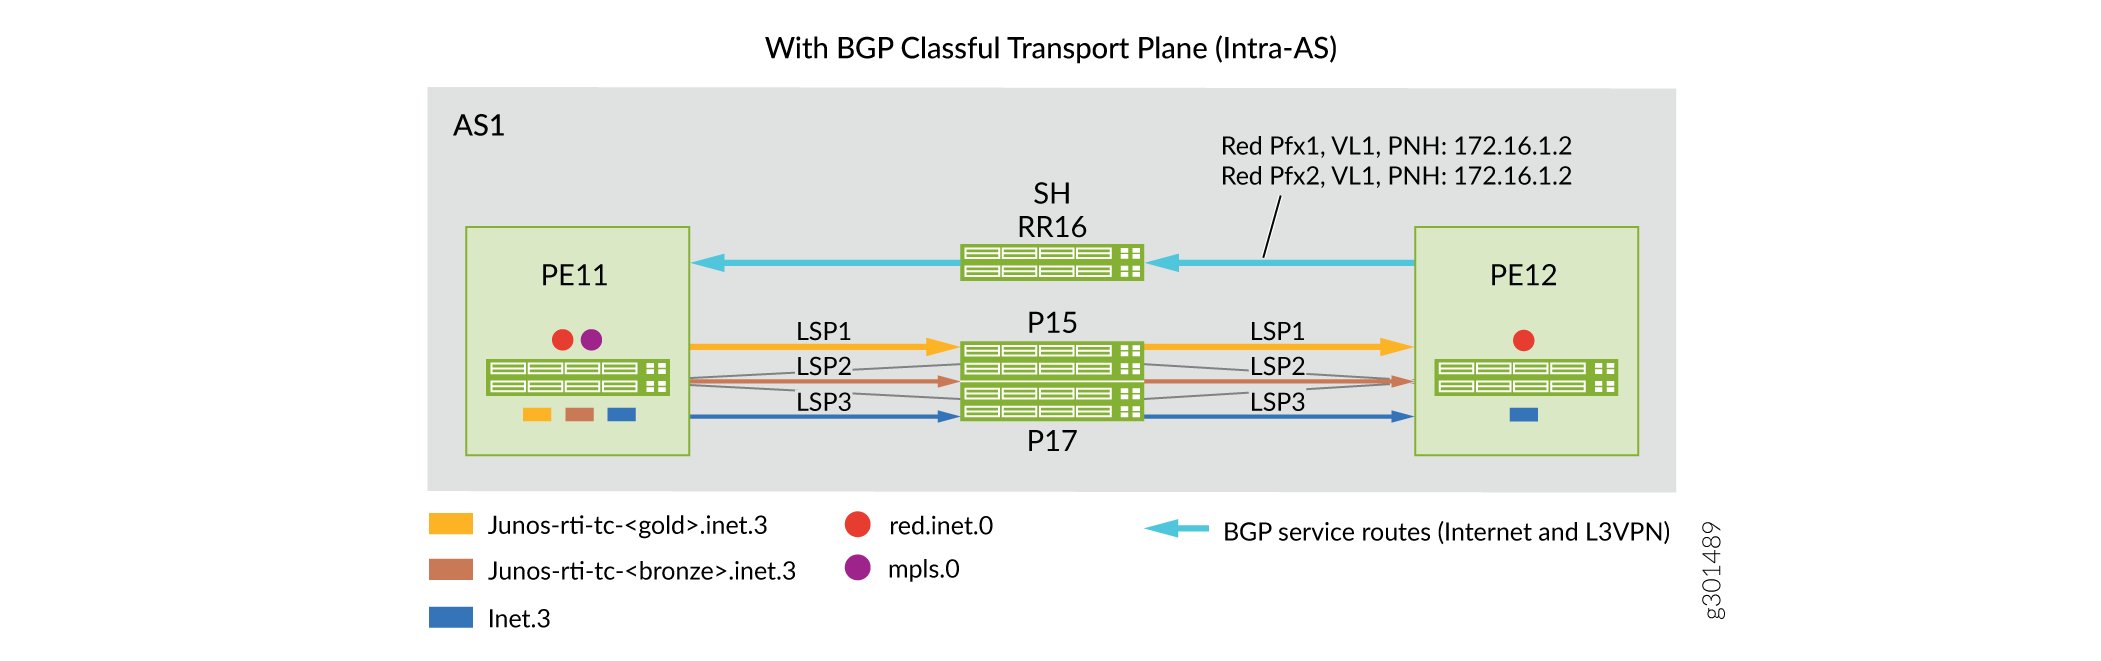 Domínio intra-AS: Cenários de antes e depois para a implementação de planos de transporte de classe BGP